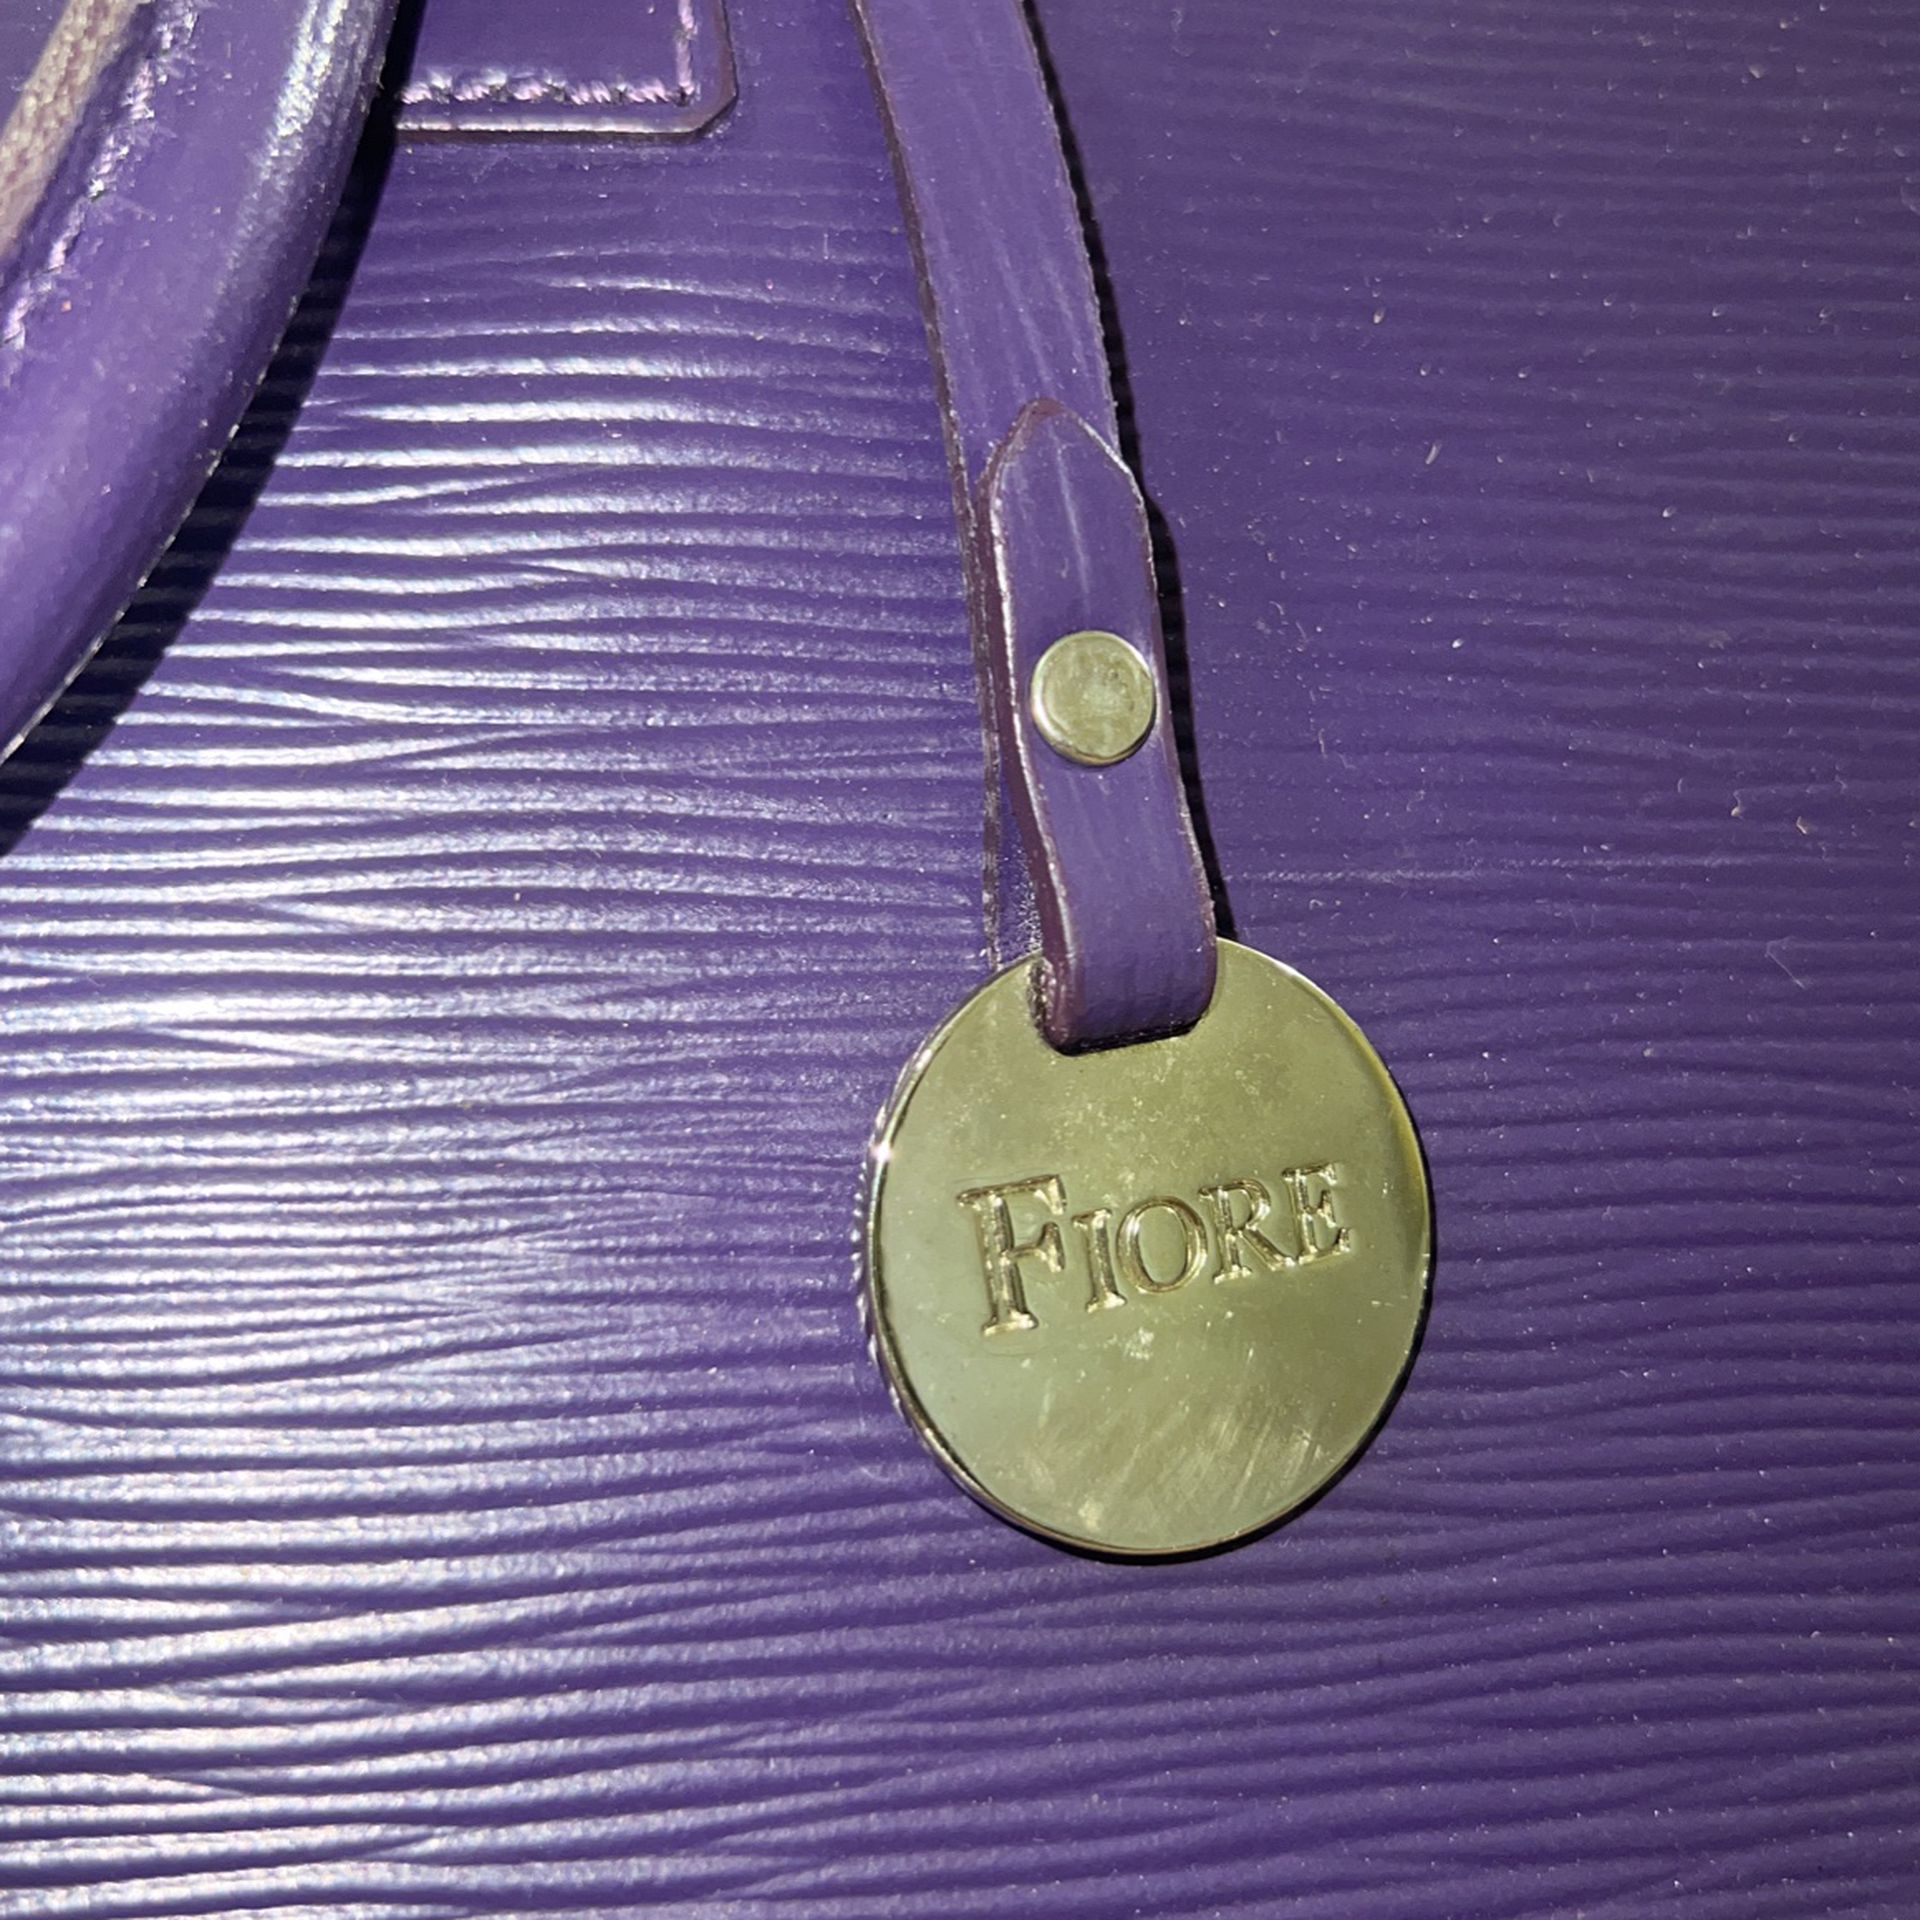 Womens Purple Fiore Italian Leather Shoulder/Tote 